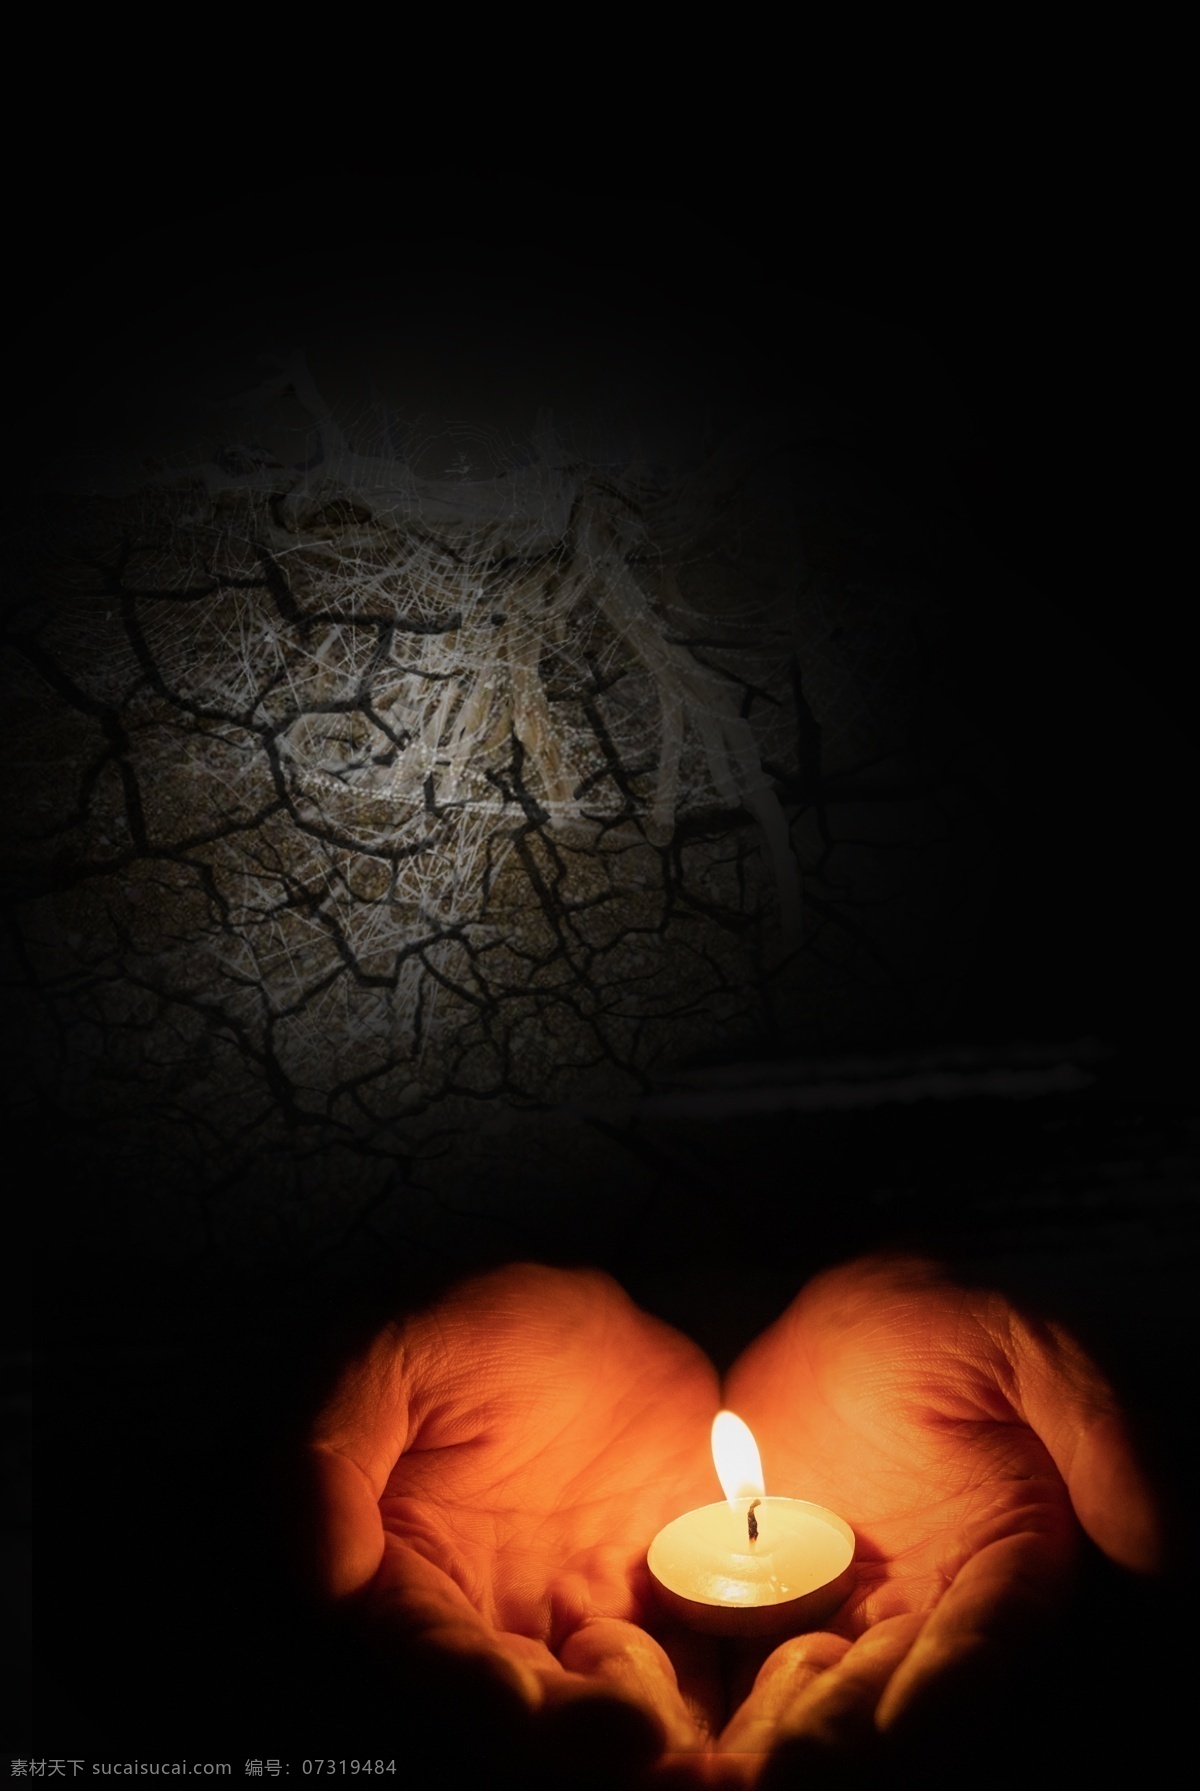 自然灾害 干旱 蜡烛 祈福 黑色 背景 海报 简约 黑色背景 蜡烛祈福 祈祷 希望 平安 思念